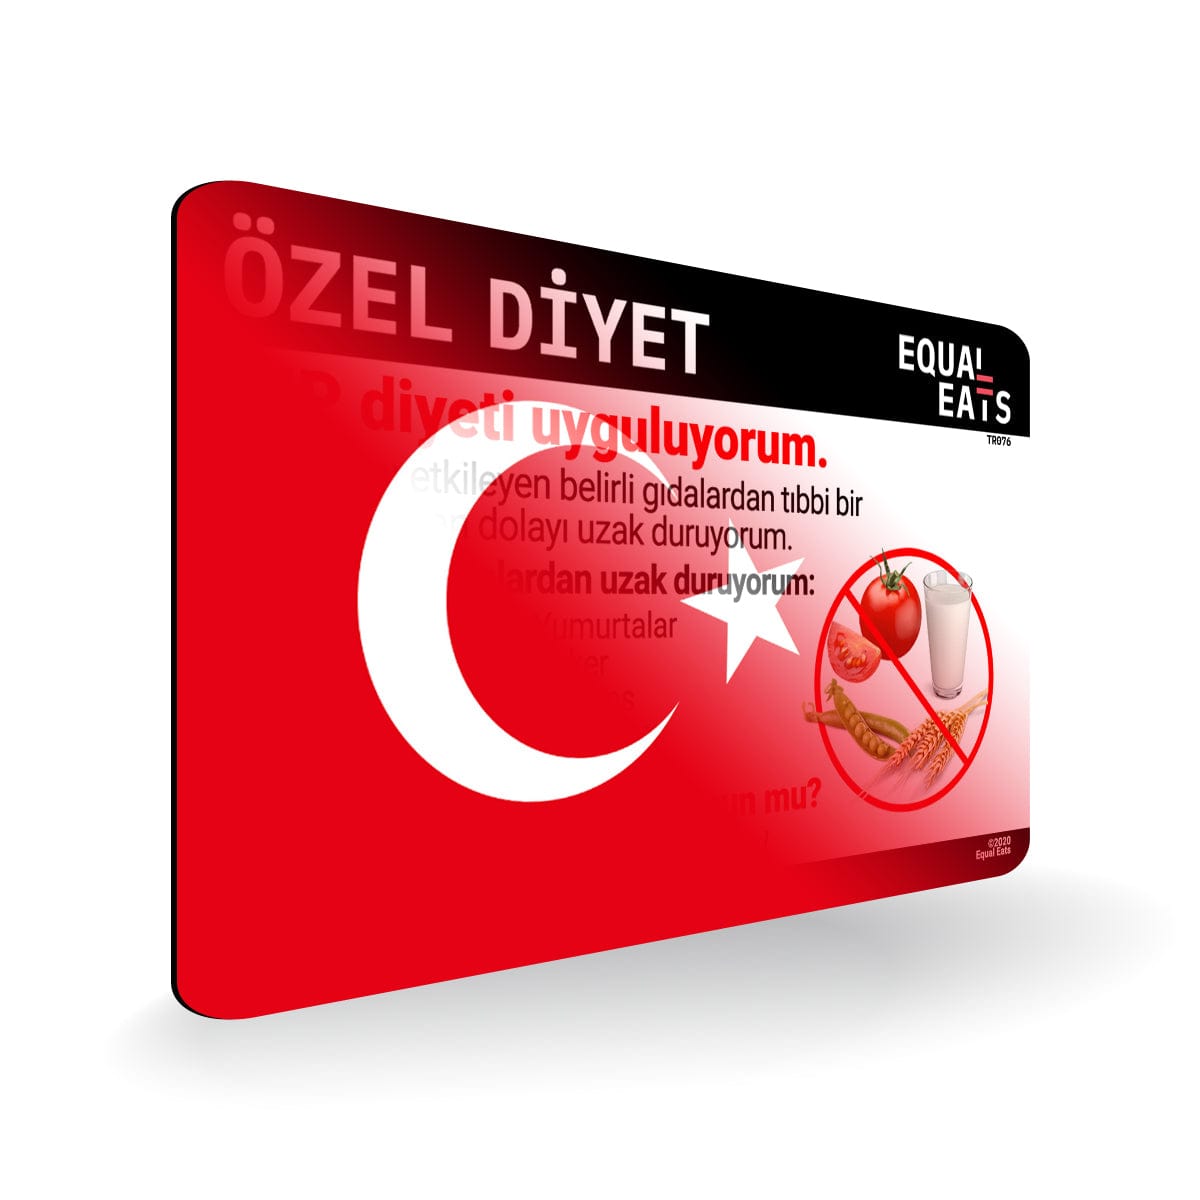 AIP Diet in Turkish. AIP Diet Card for Turkey